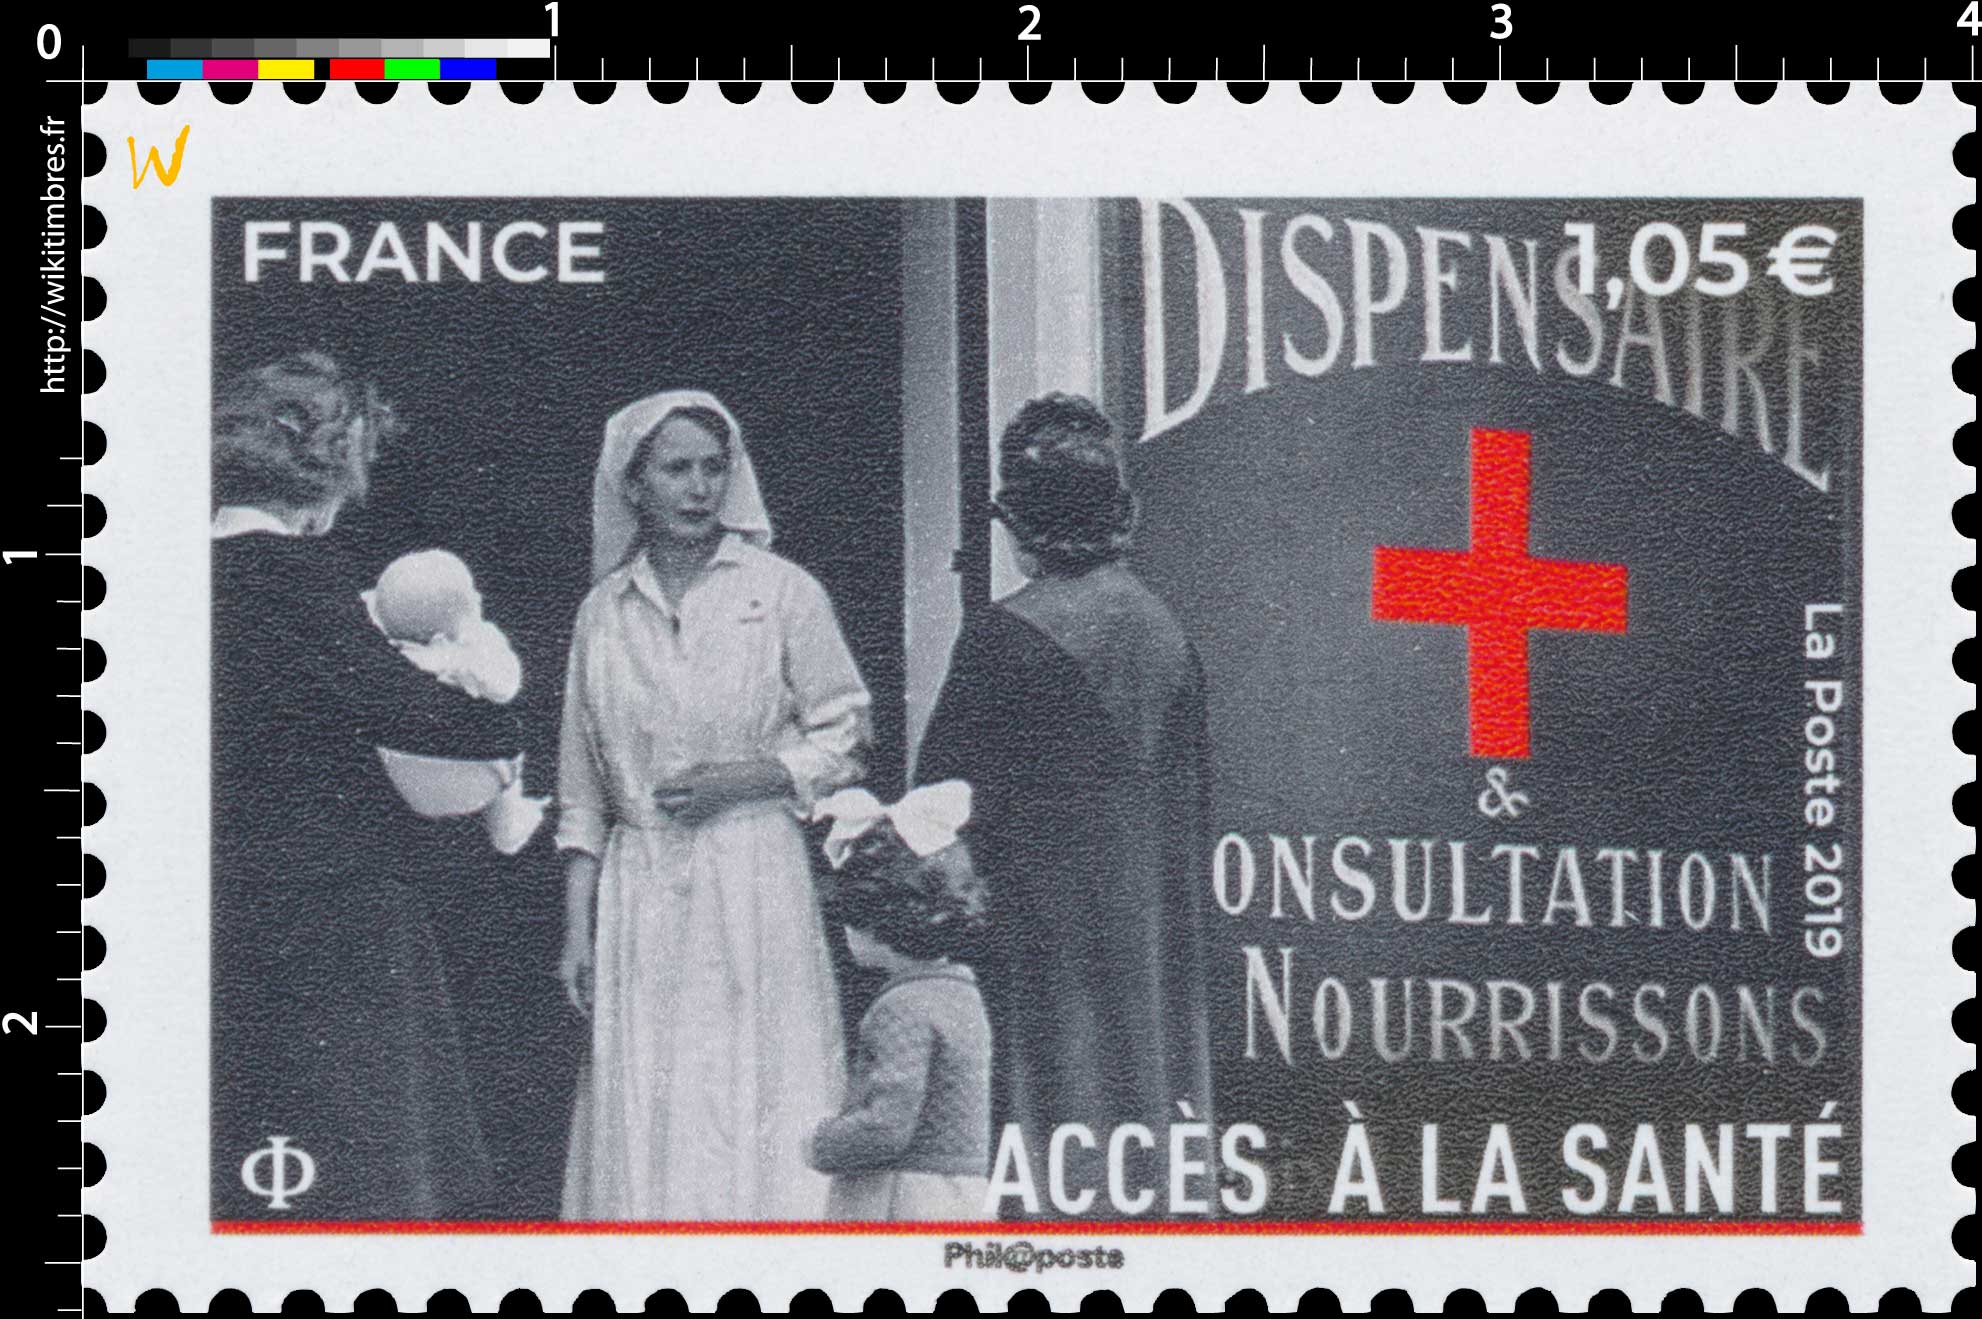 2019 Croix-Rouge française - ACCÈS A LA SANTE